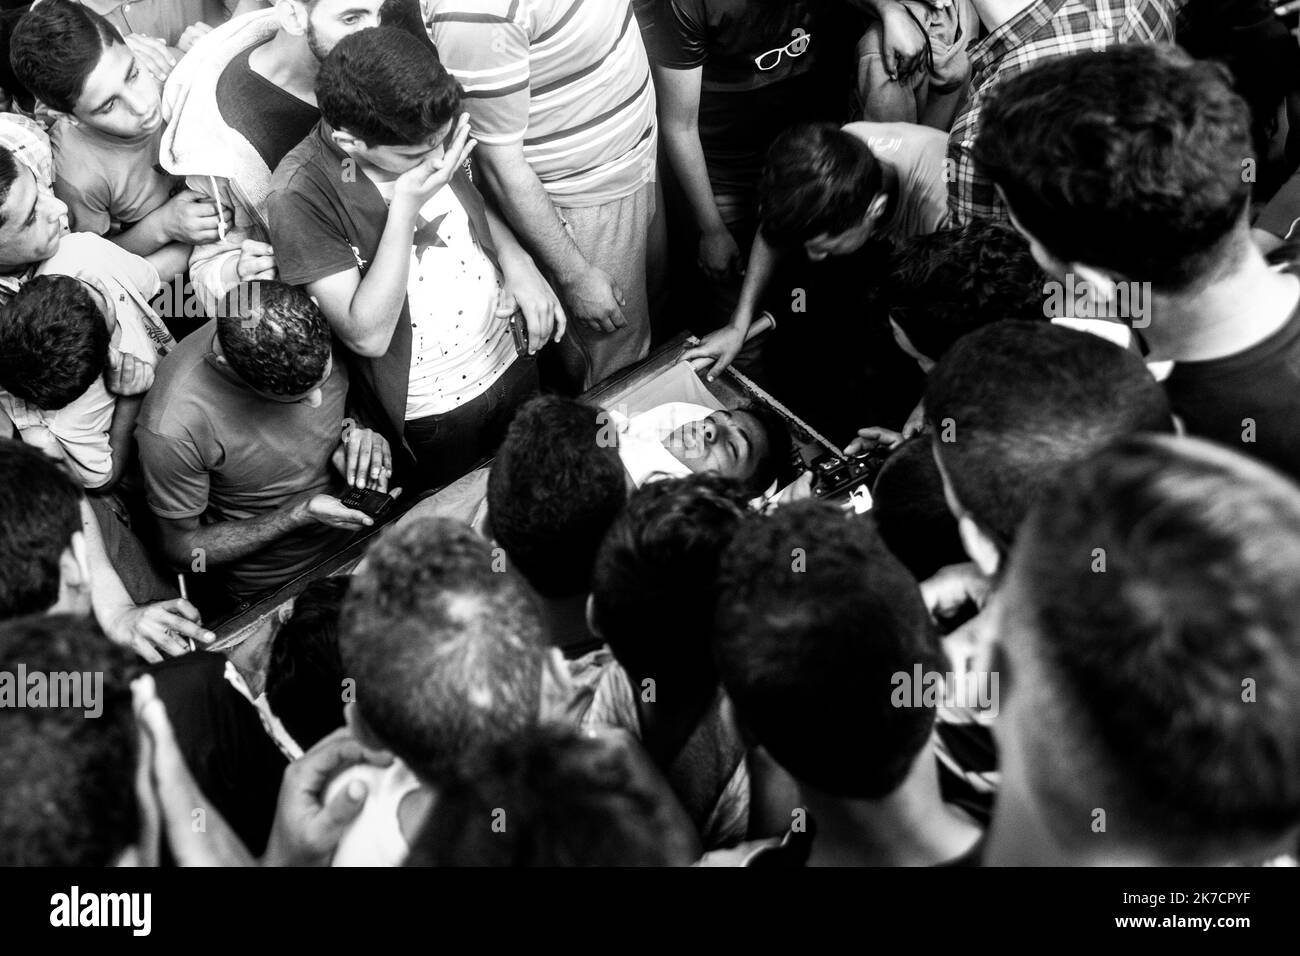 ©Michael Bunel / Le Pictorium/MAXPPP - Michael Bunel / Le Pictorium - 13/05/2018 - Palestine / Bande de Gaza / Rafah - Des membres de la famille et amis rassembles a la mosquee pour leurs dernier au revoir au defunt. Jaber Salem Mustafa, un homme de 40 ans. Il est decede d'un tir de sniper dans la poitrine pendant la manifestation du vendredi 12 mai lors d'affrontements avec l'armee israelienne. Les tensions sont elevees le long de la frontiere entre Gaza et Israel apres plus d'un mois de manifestations de masse hebdomadaires pres de la barriere qui a fait 50 morts parmi les manifestants pales Stock Photo